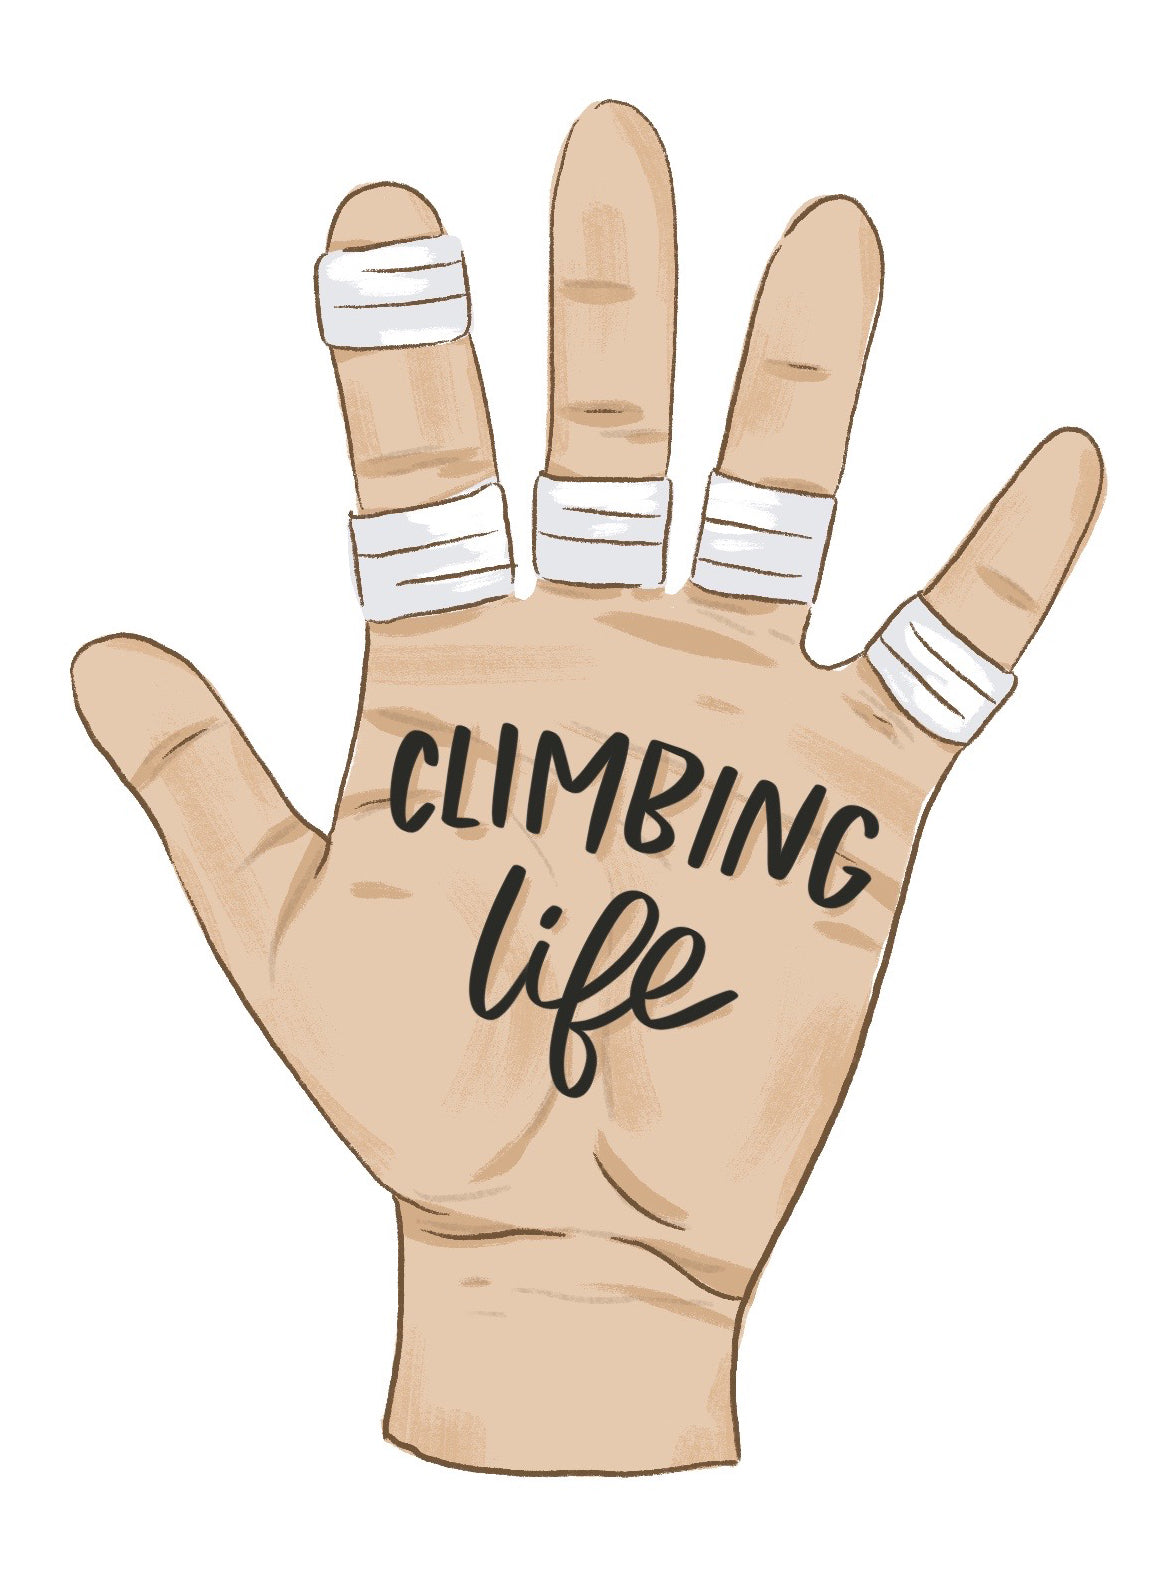 Climbing life